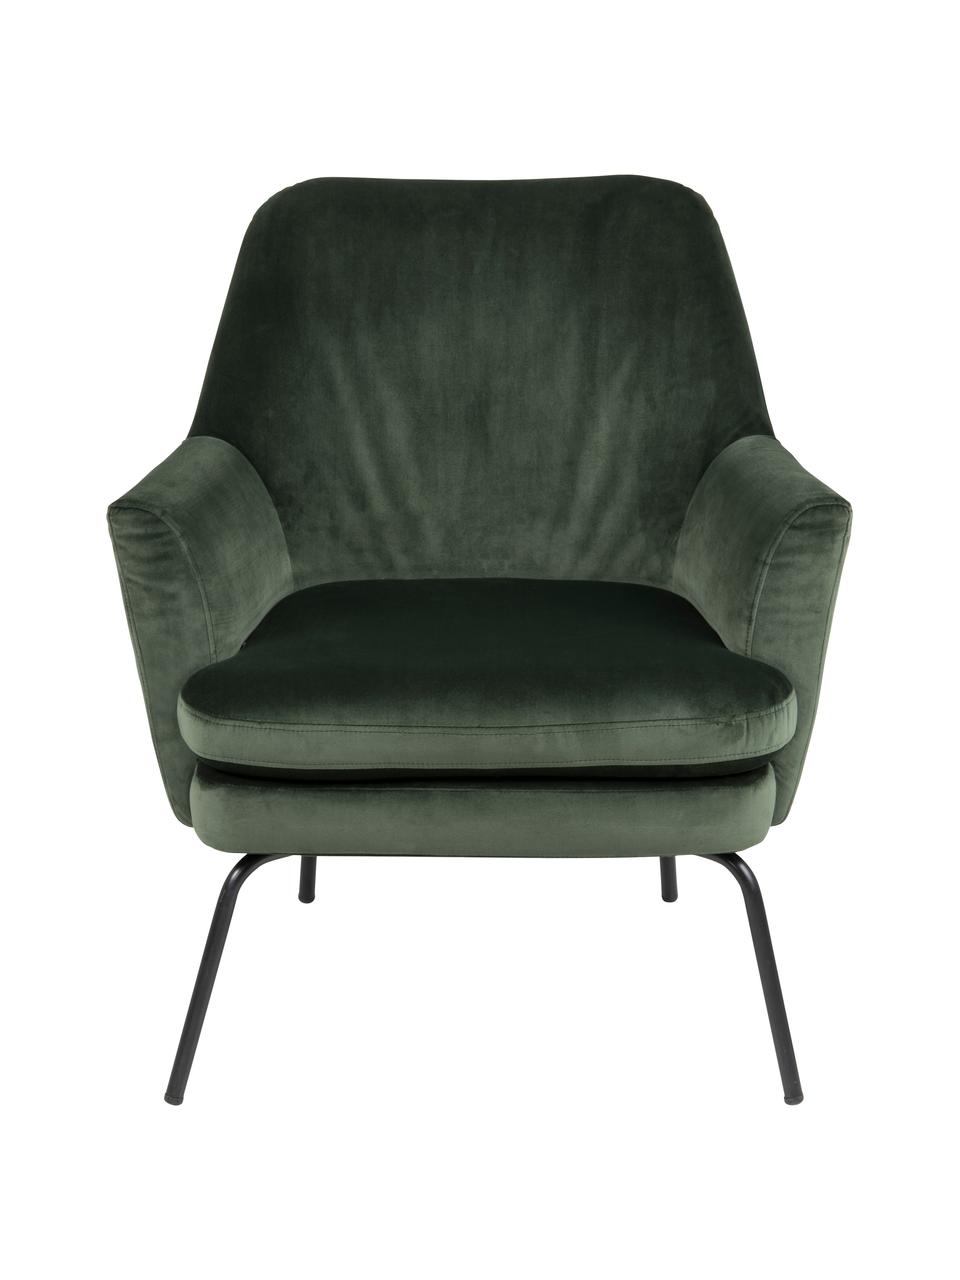 Fluwelen fauteuil Chisa in groen, Bekleding: polyester (fluweel), Poten: gepoedercoat metaal, Bosgroen, 68 x 73 cm